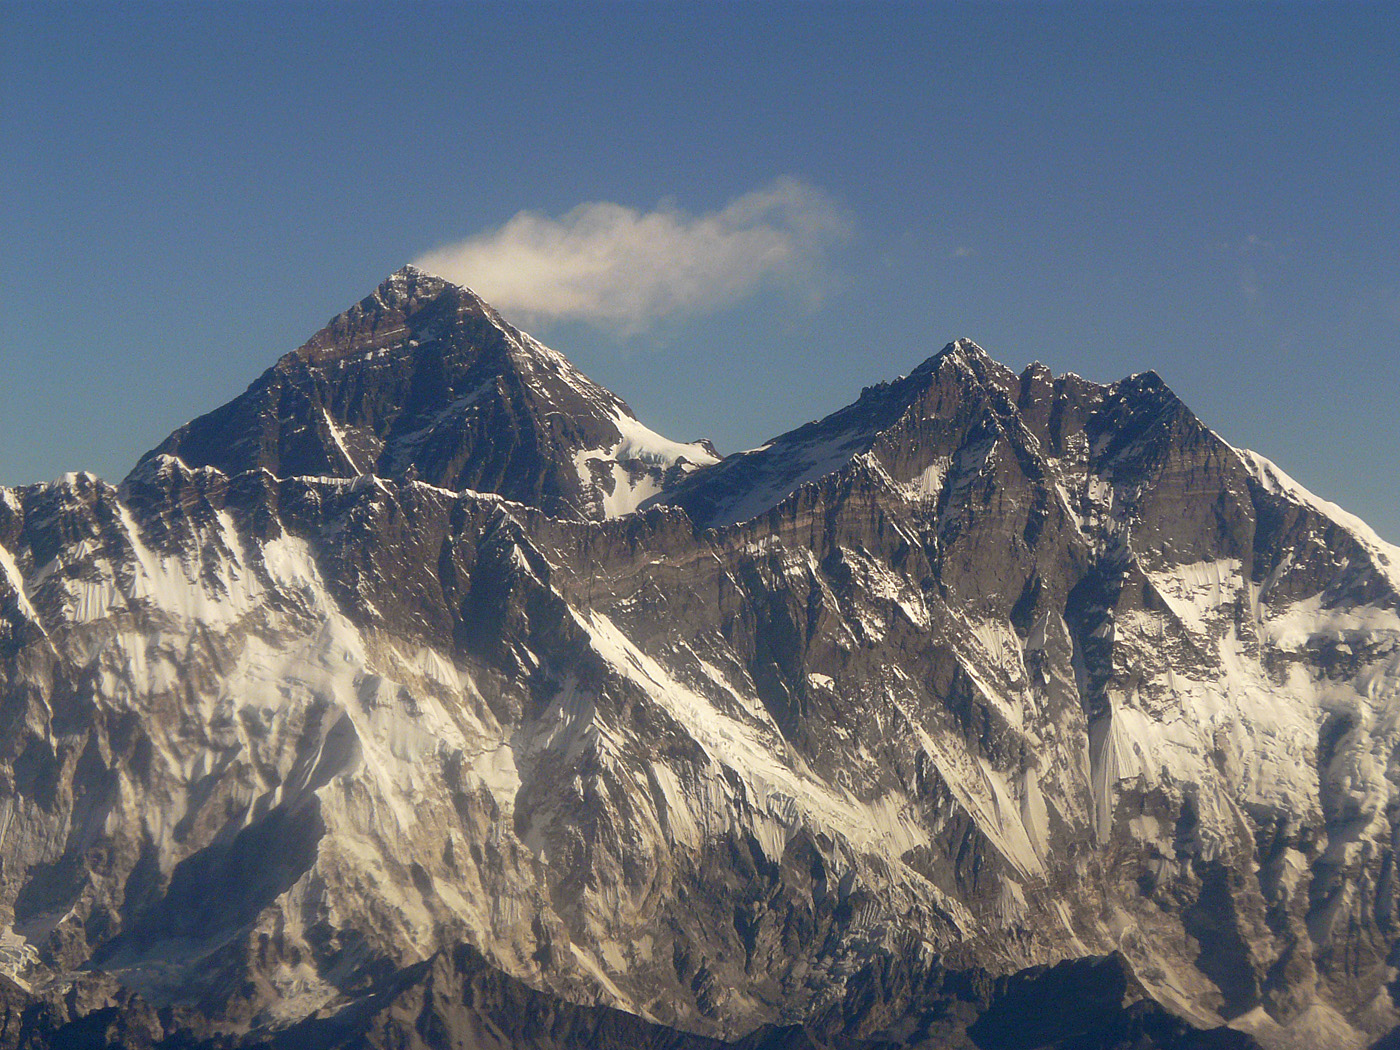 Mount Everest and Lhotse